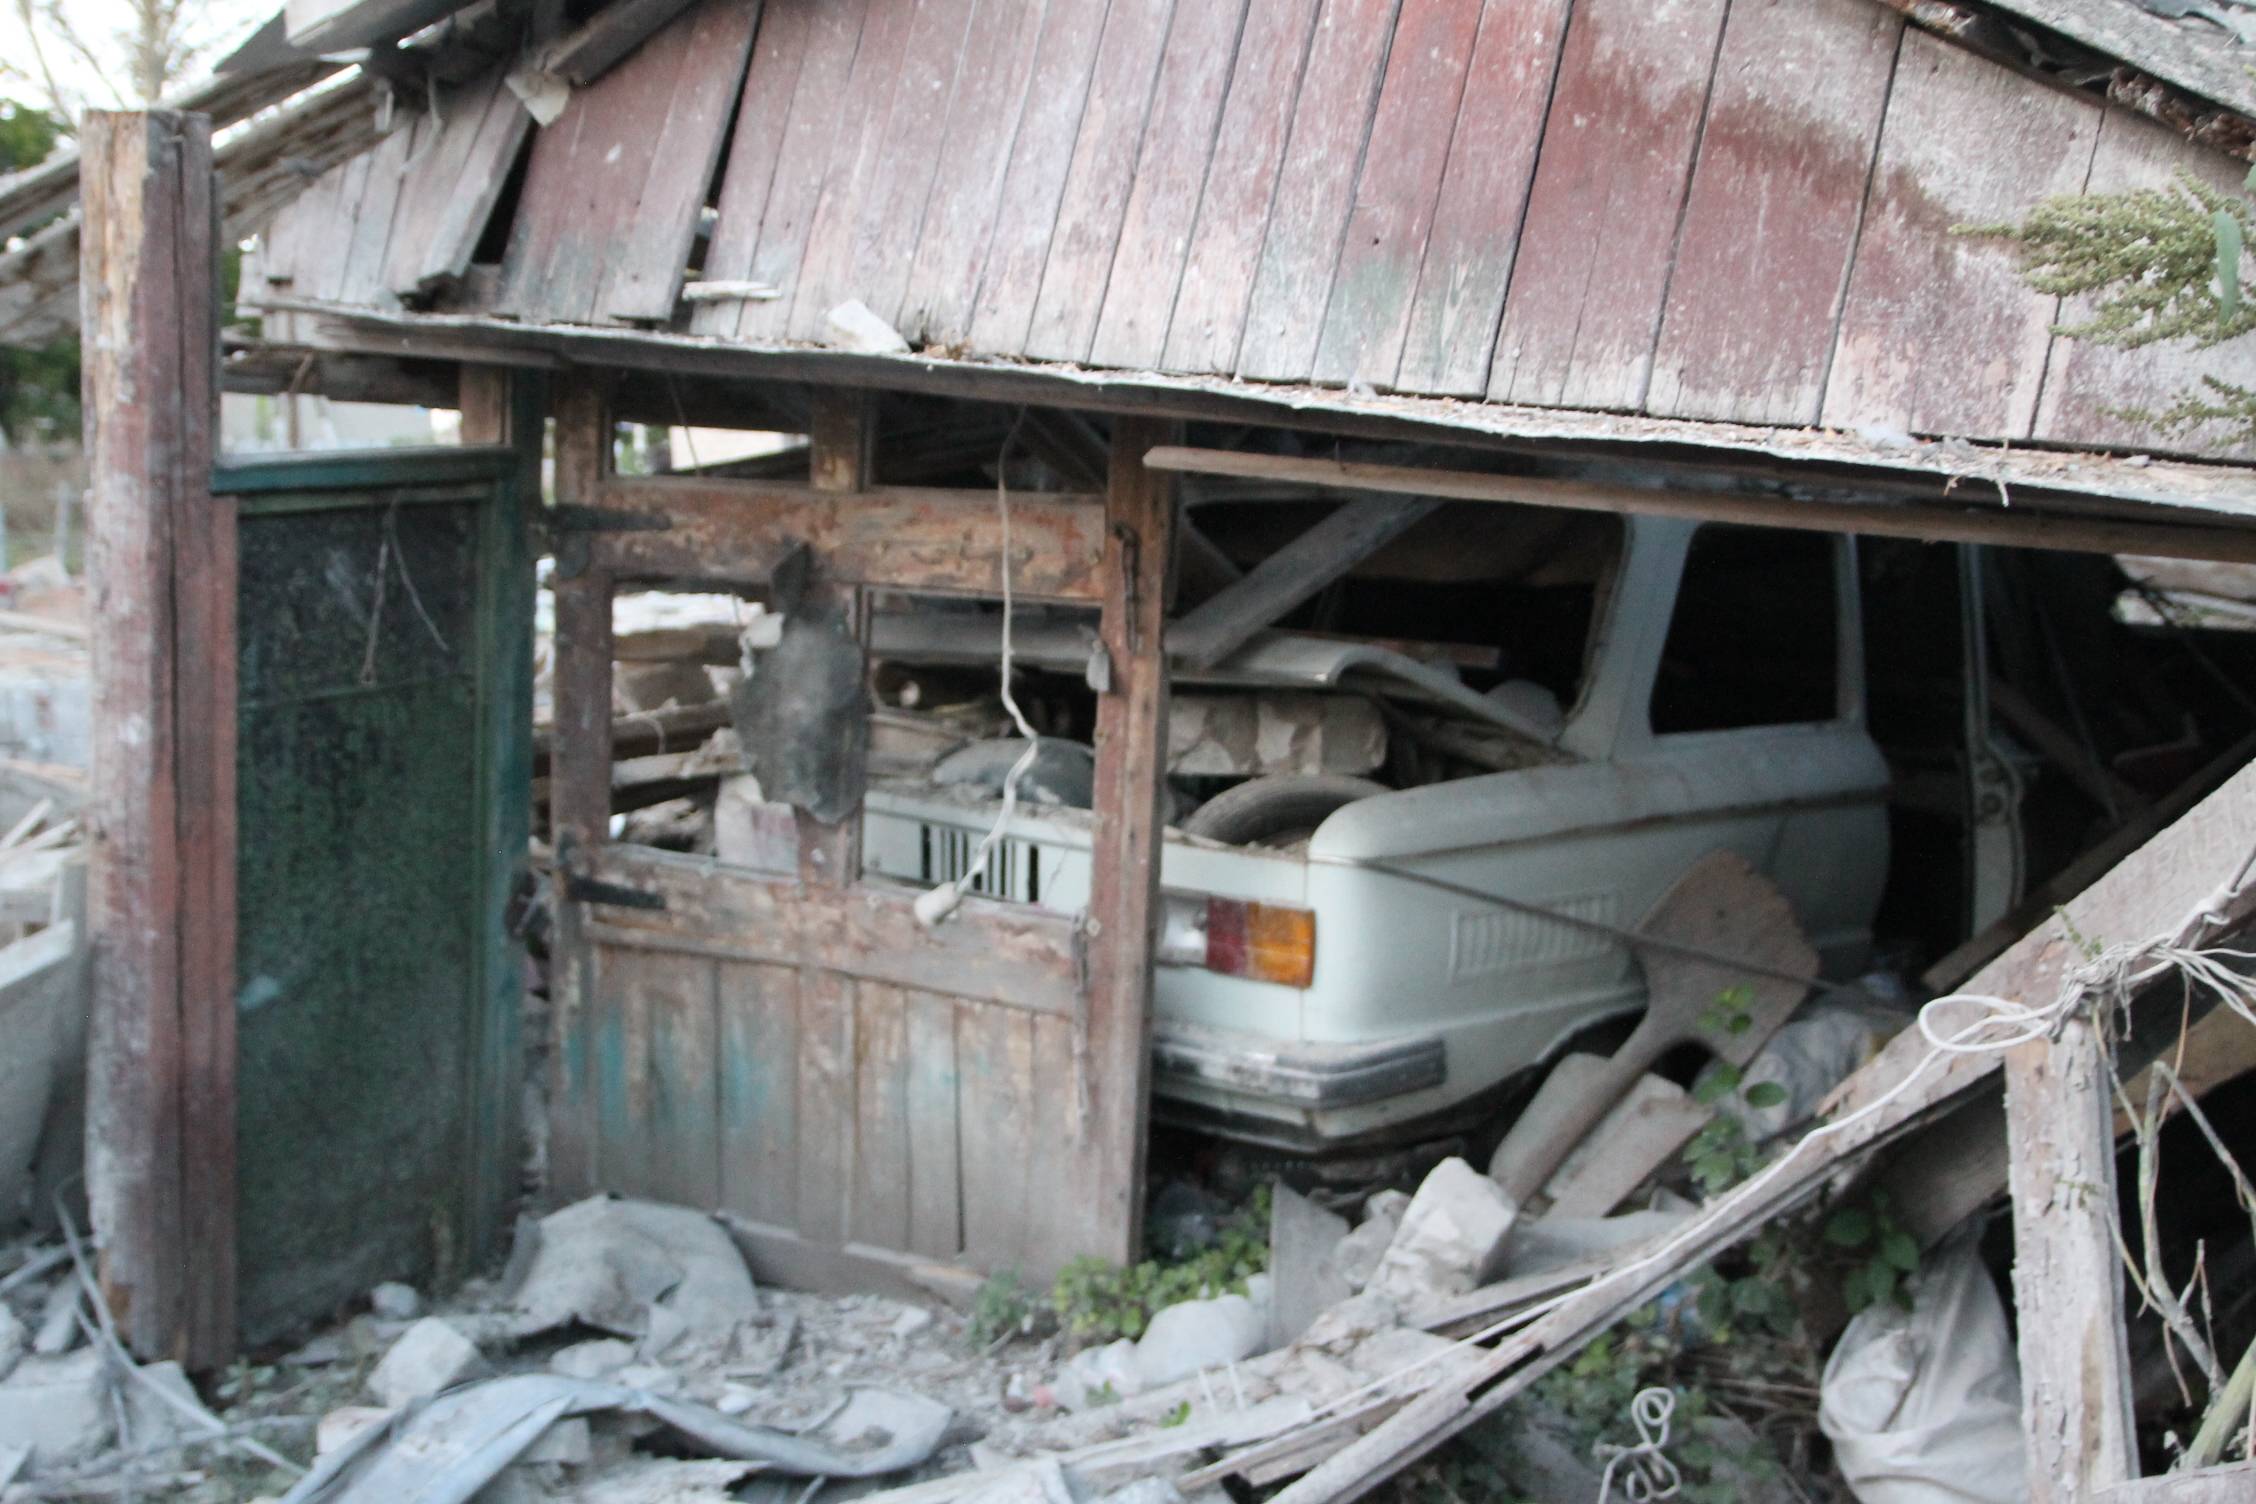 widok zbombardowanej wioski, w zawalonym garażu widać wrak auta